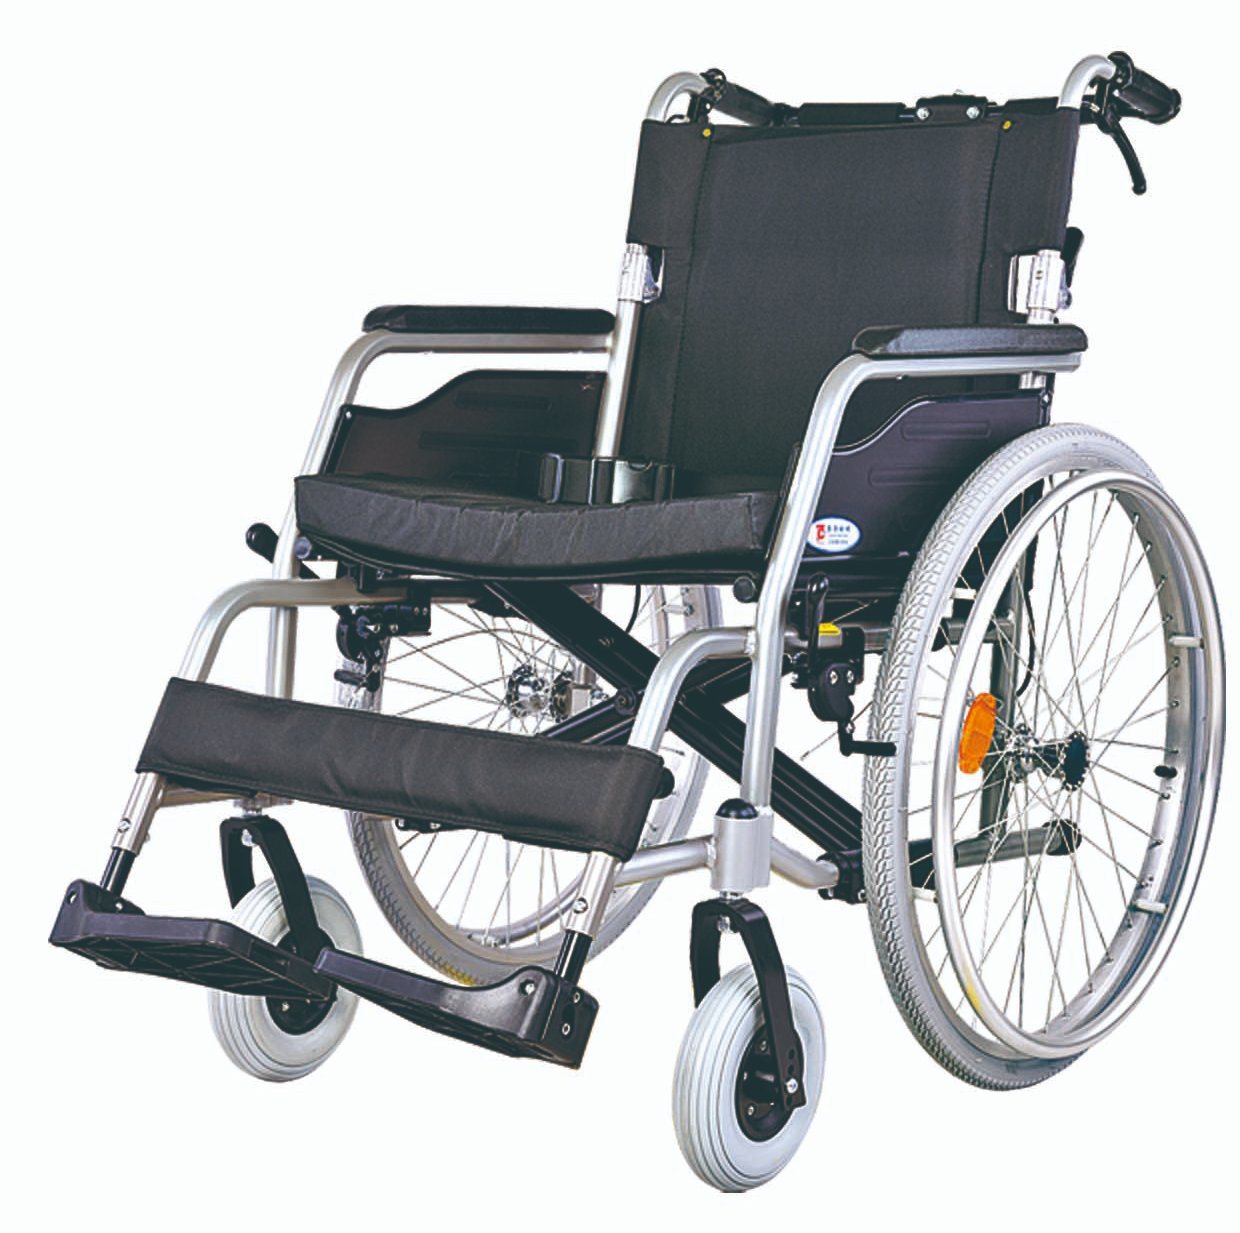 інвалідне крісло для людей похилого віку Представлене зображення